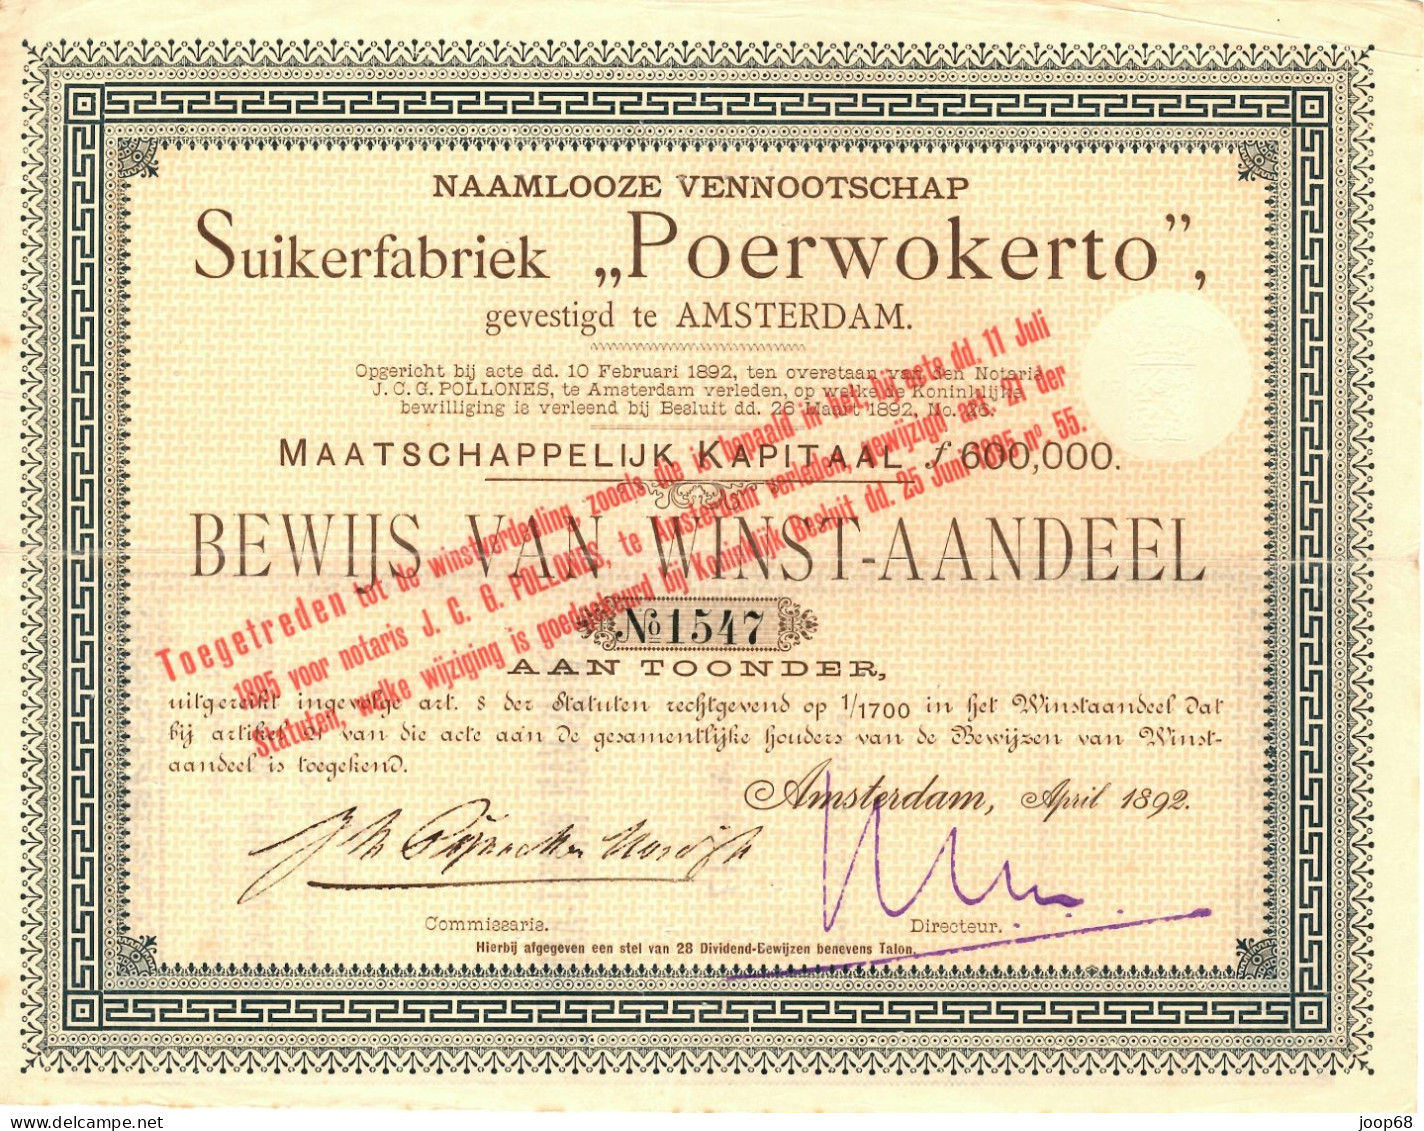 Suikerfabriek "Poerwokerto" N.V. - Winst-Aandeel - Amsterdam, April 1892 Indonesia - Agricoltura